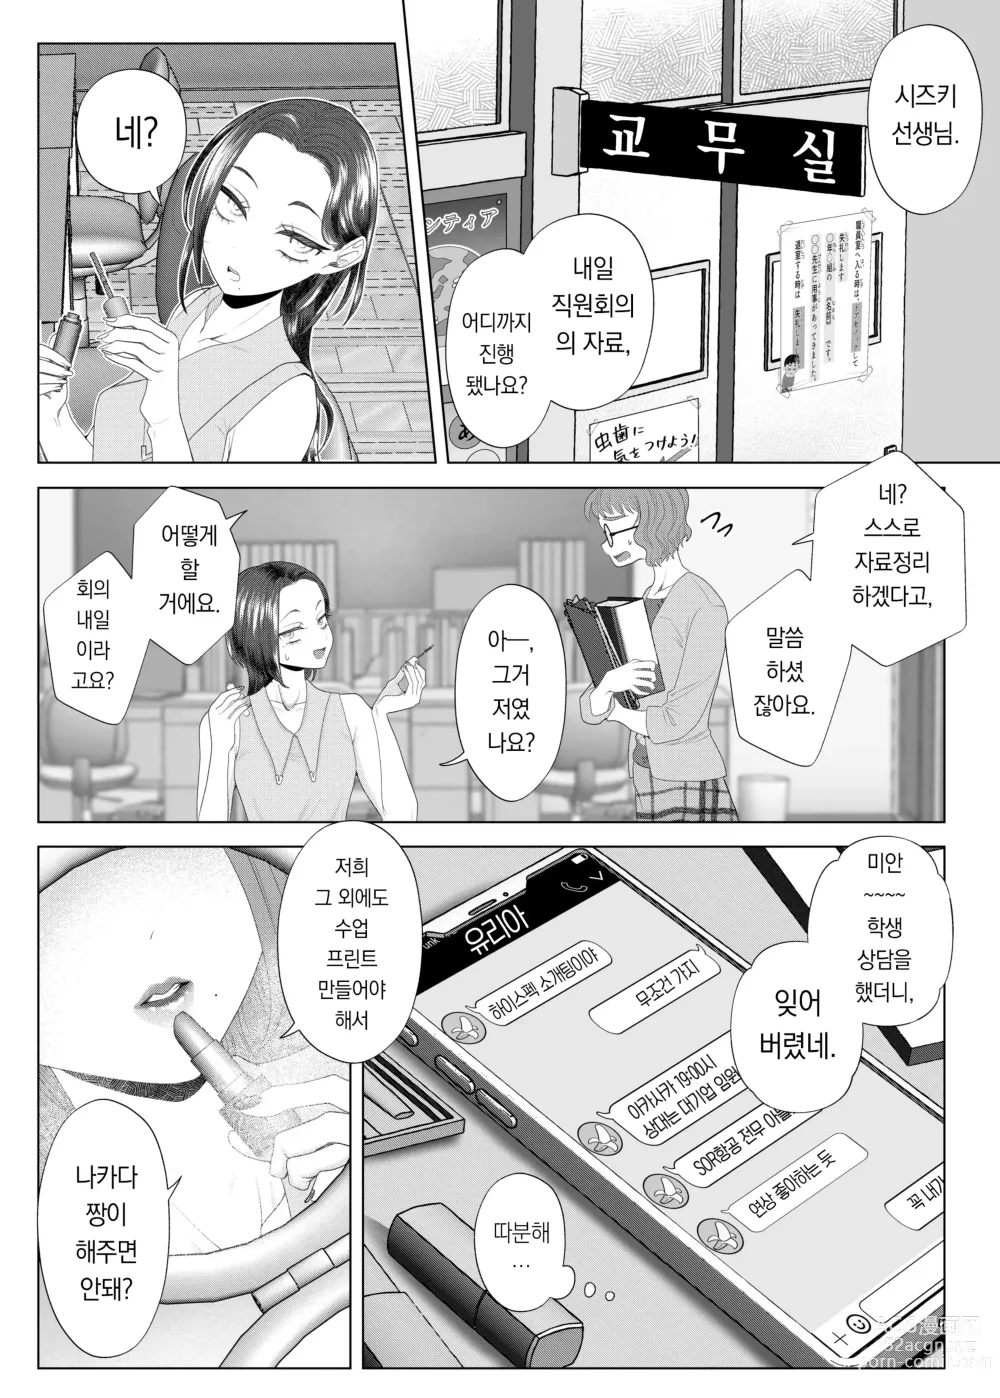 Page 5 of doujinshi 쓰레기 선생을 최면 앱으로 노예화 복수 조교